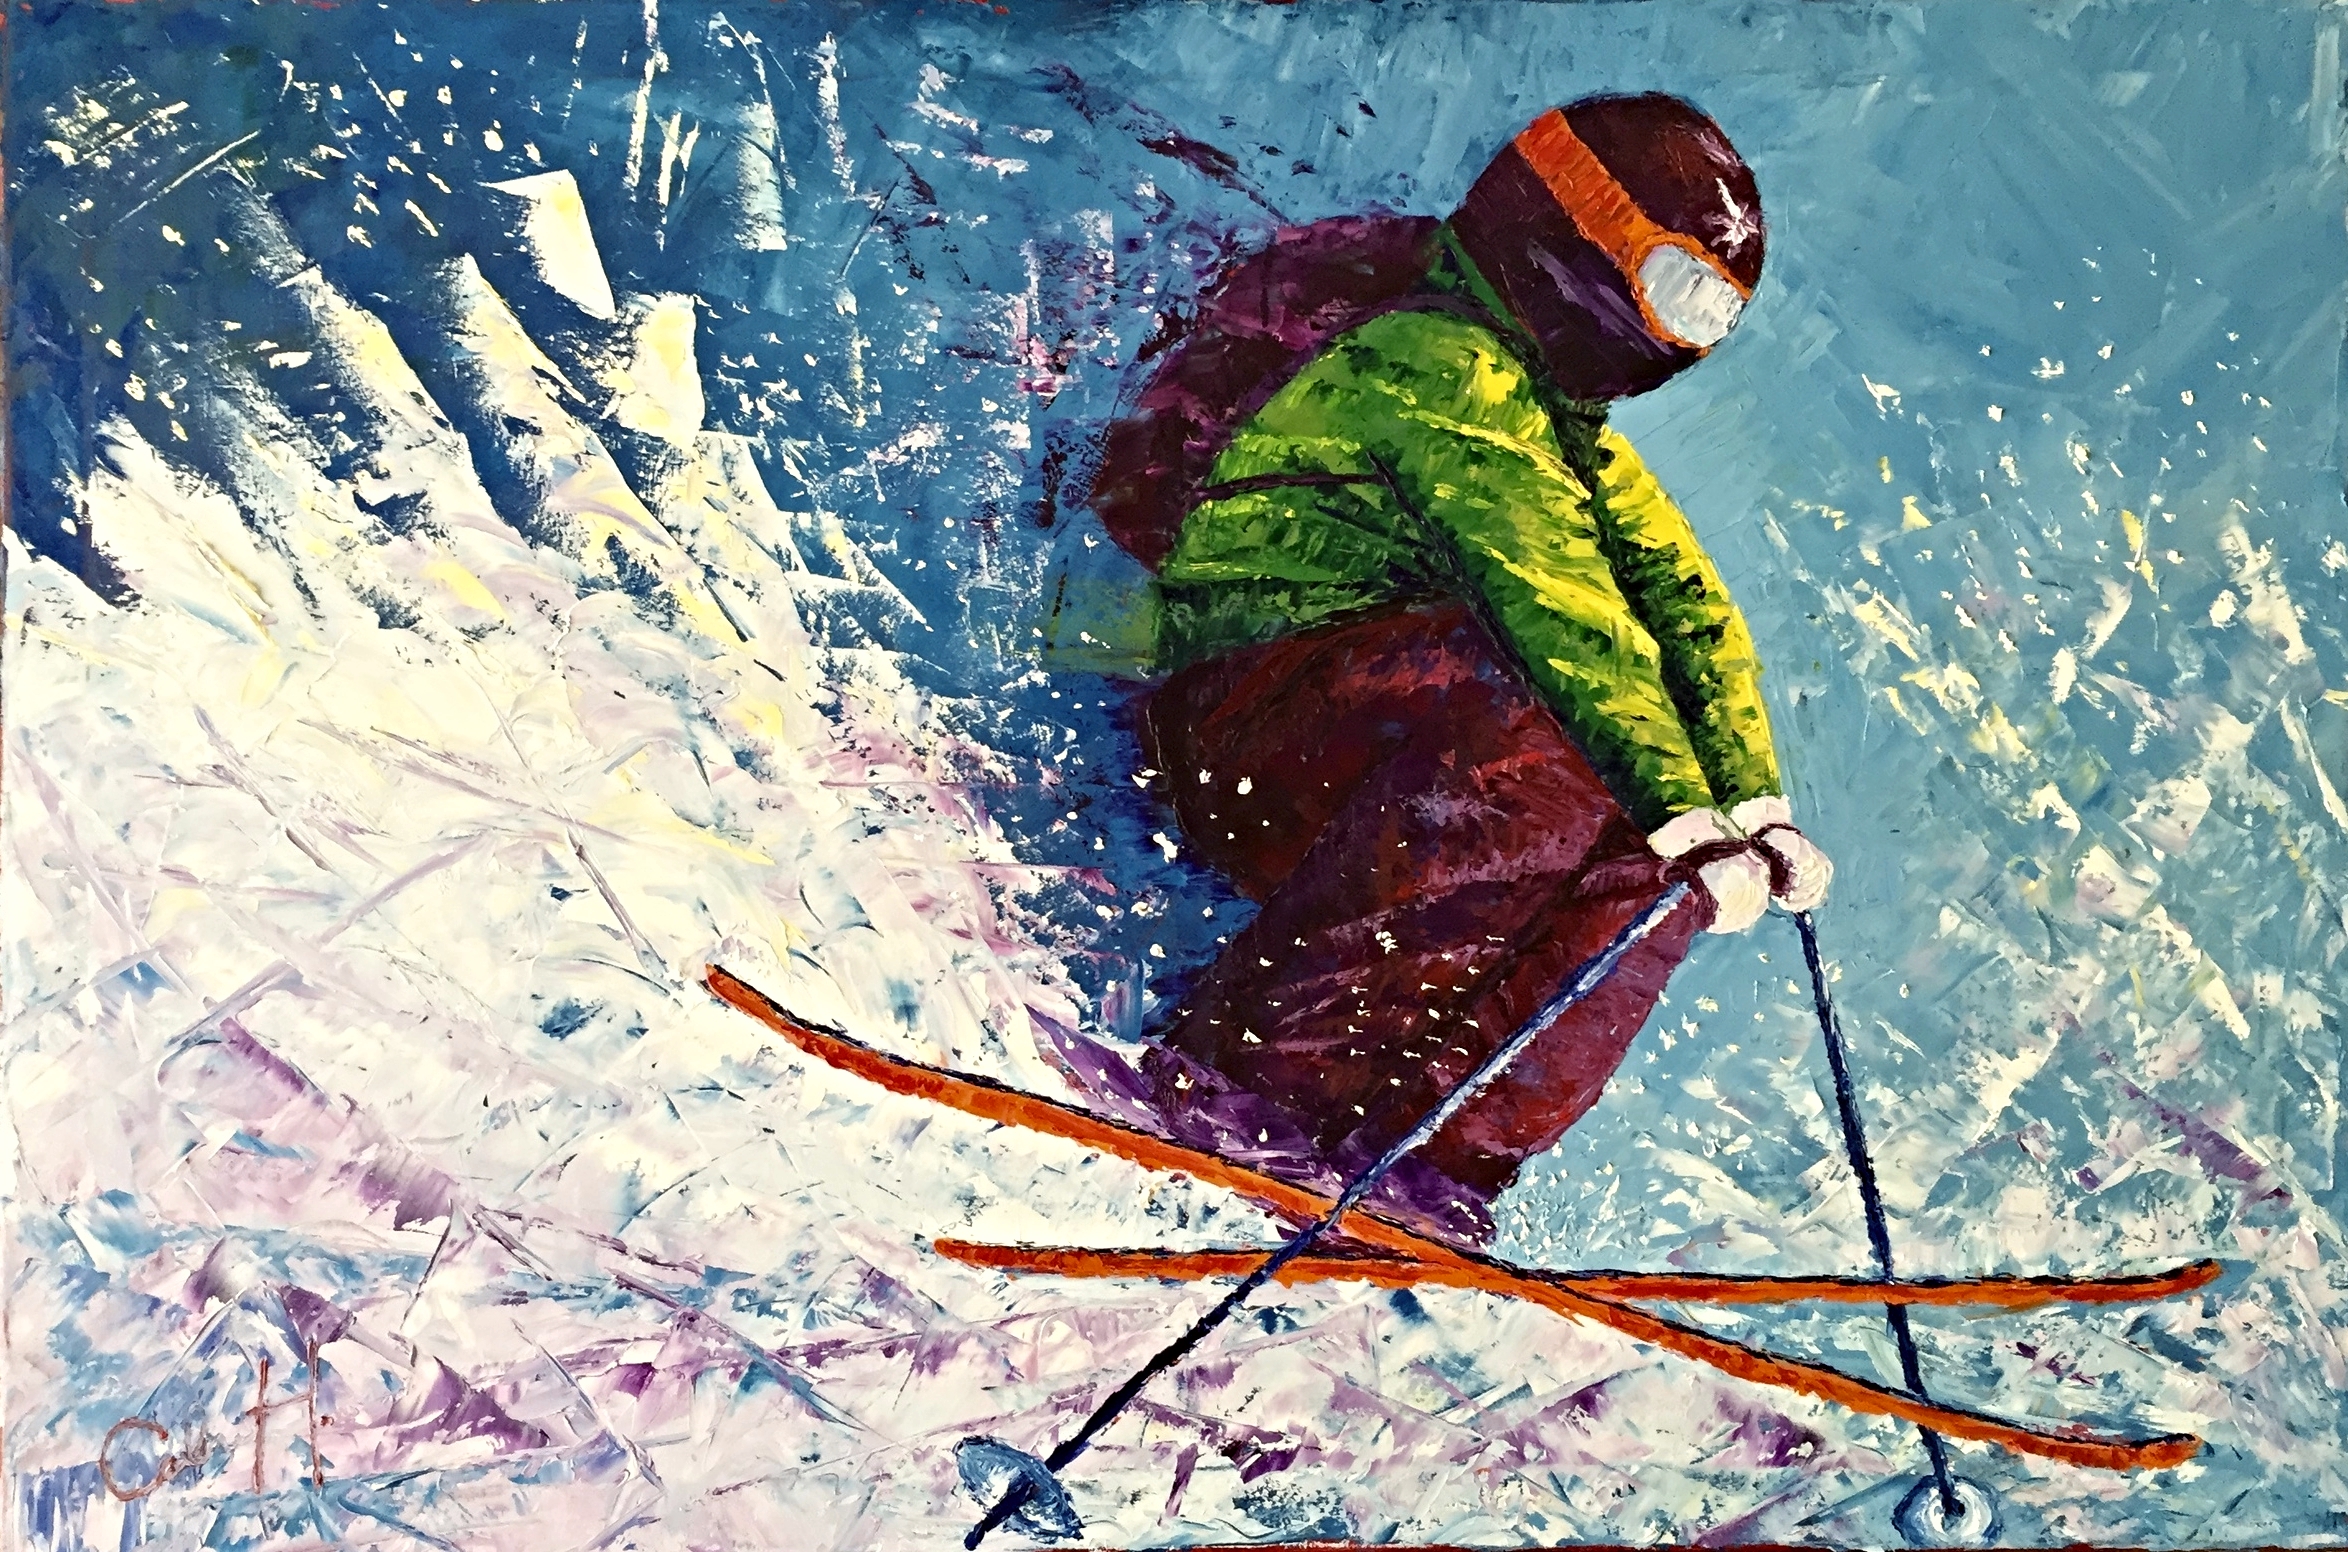 "Skier for Matt"